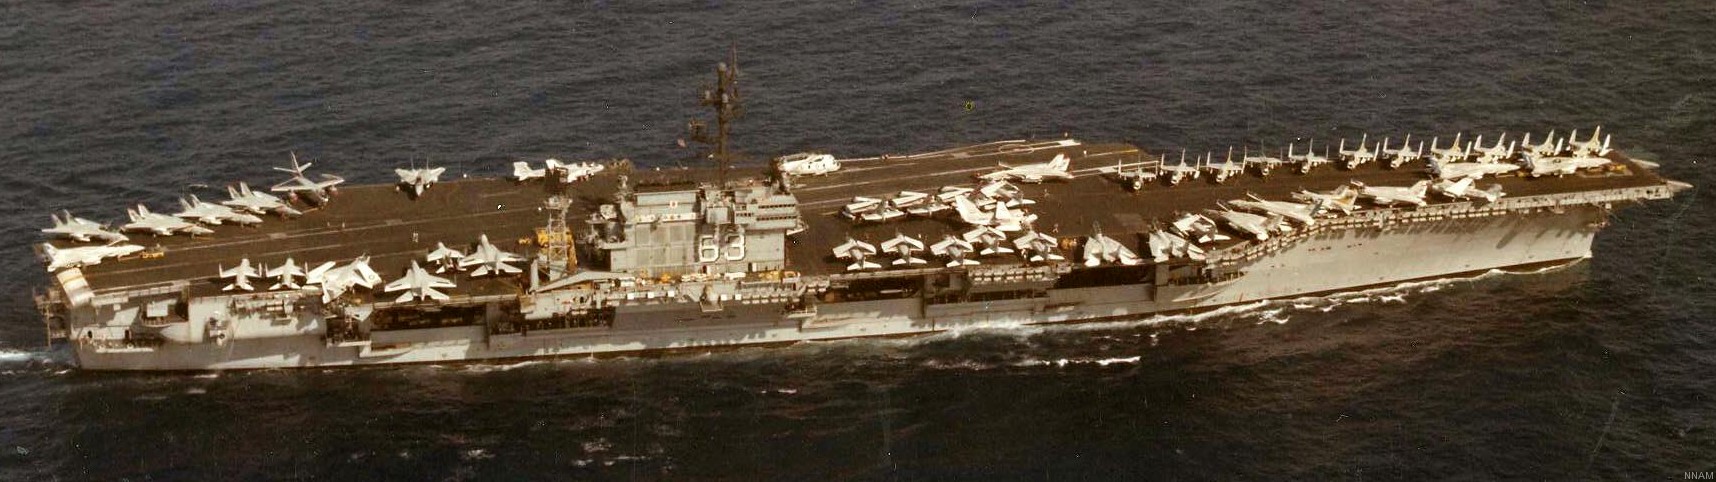 cv-63 uss kitty hawk aircraft carrier air wing cvw-11 us navy 235